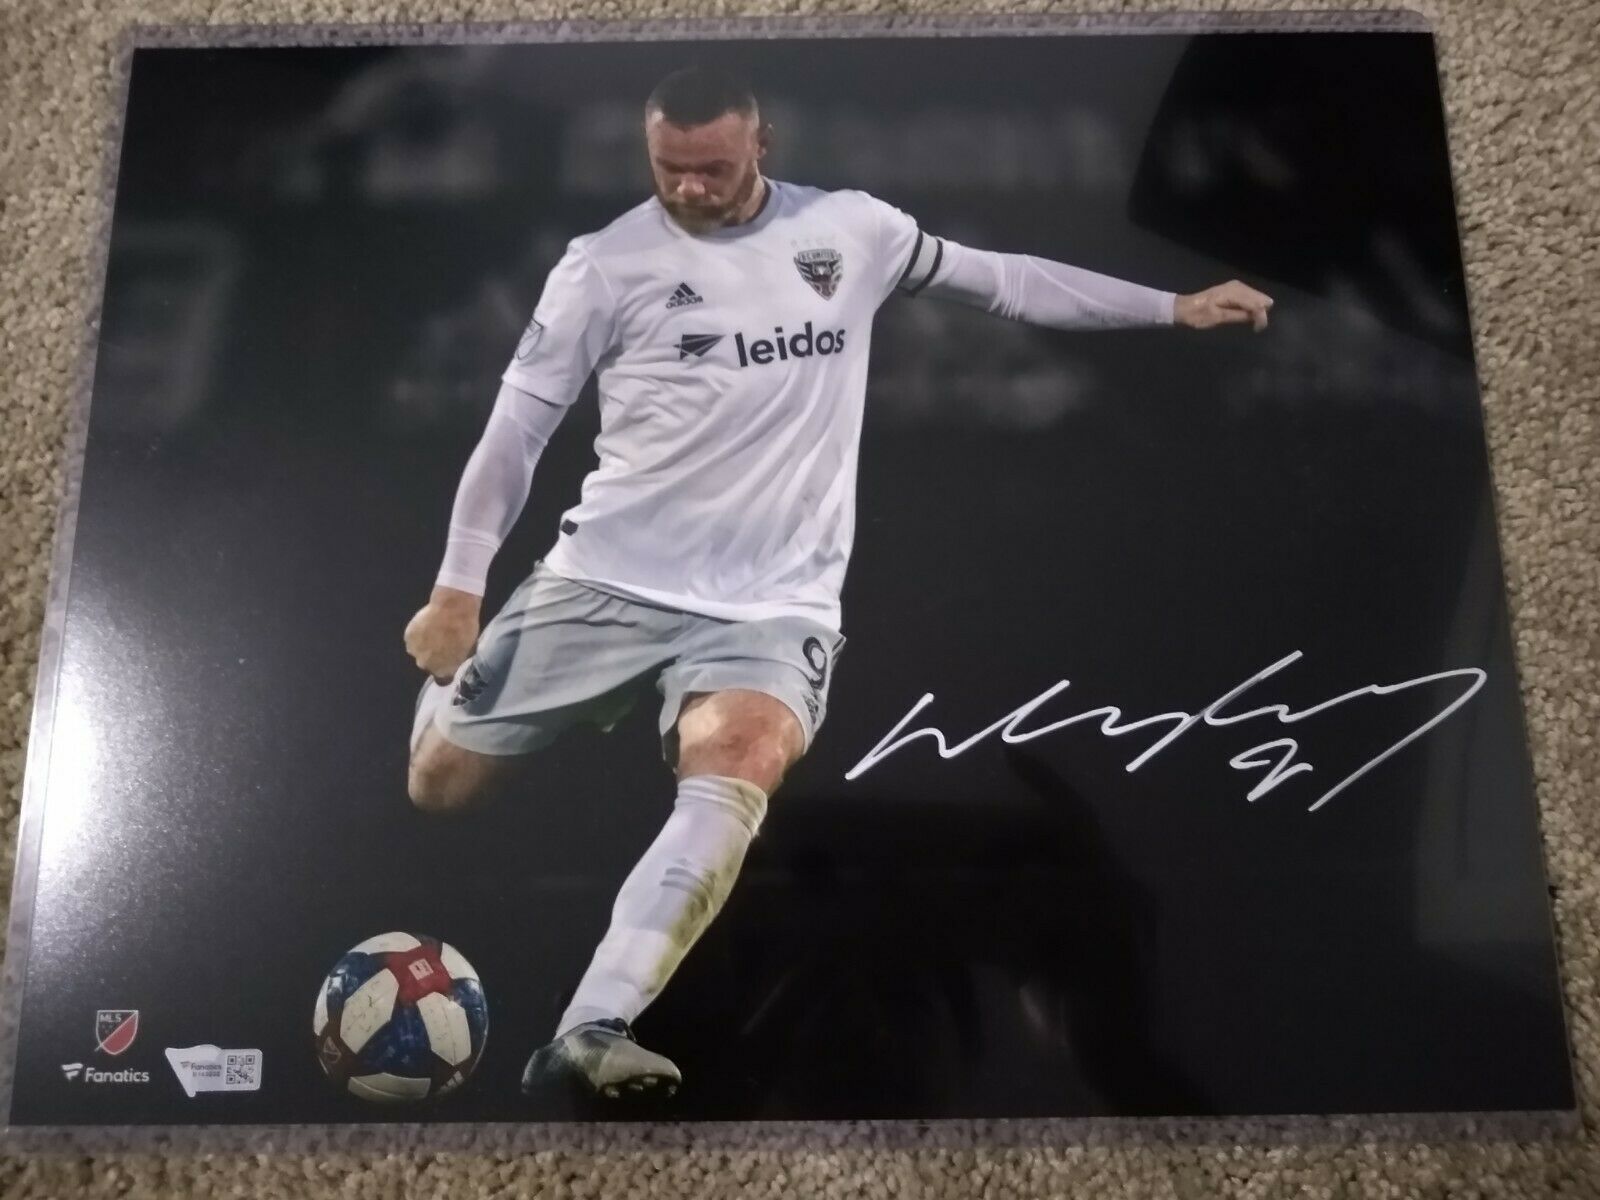 Wayne Rooney Signed D.c. United 11x14 Photo Fanatics Authentic Autograph Auto